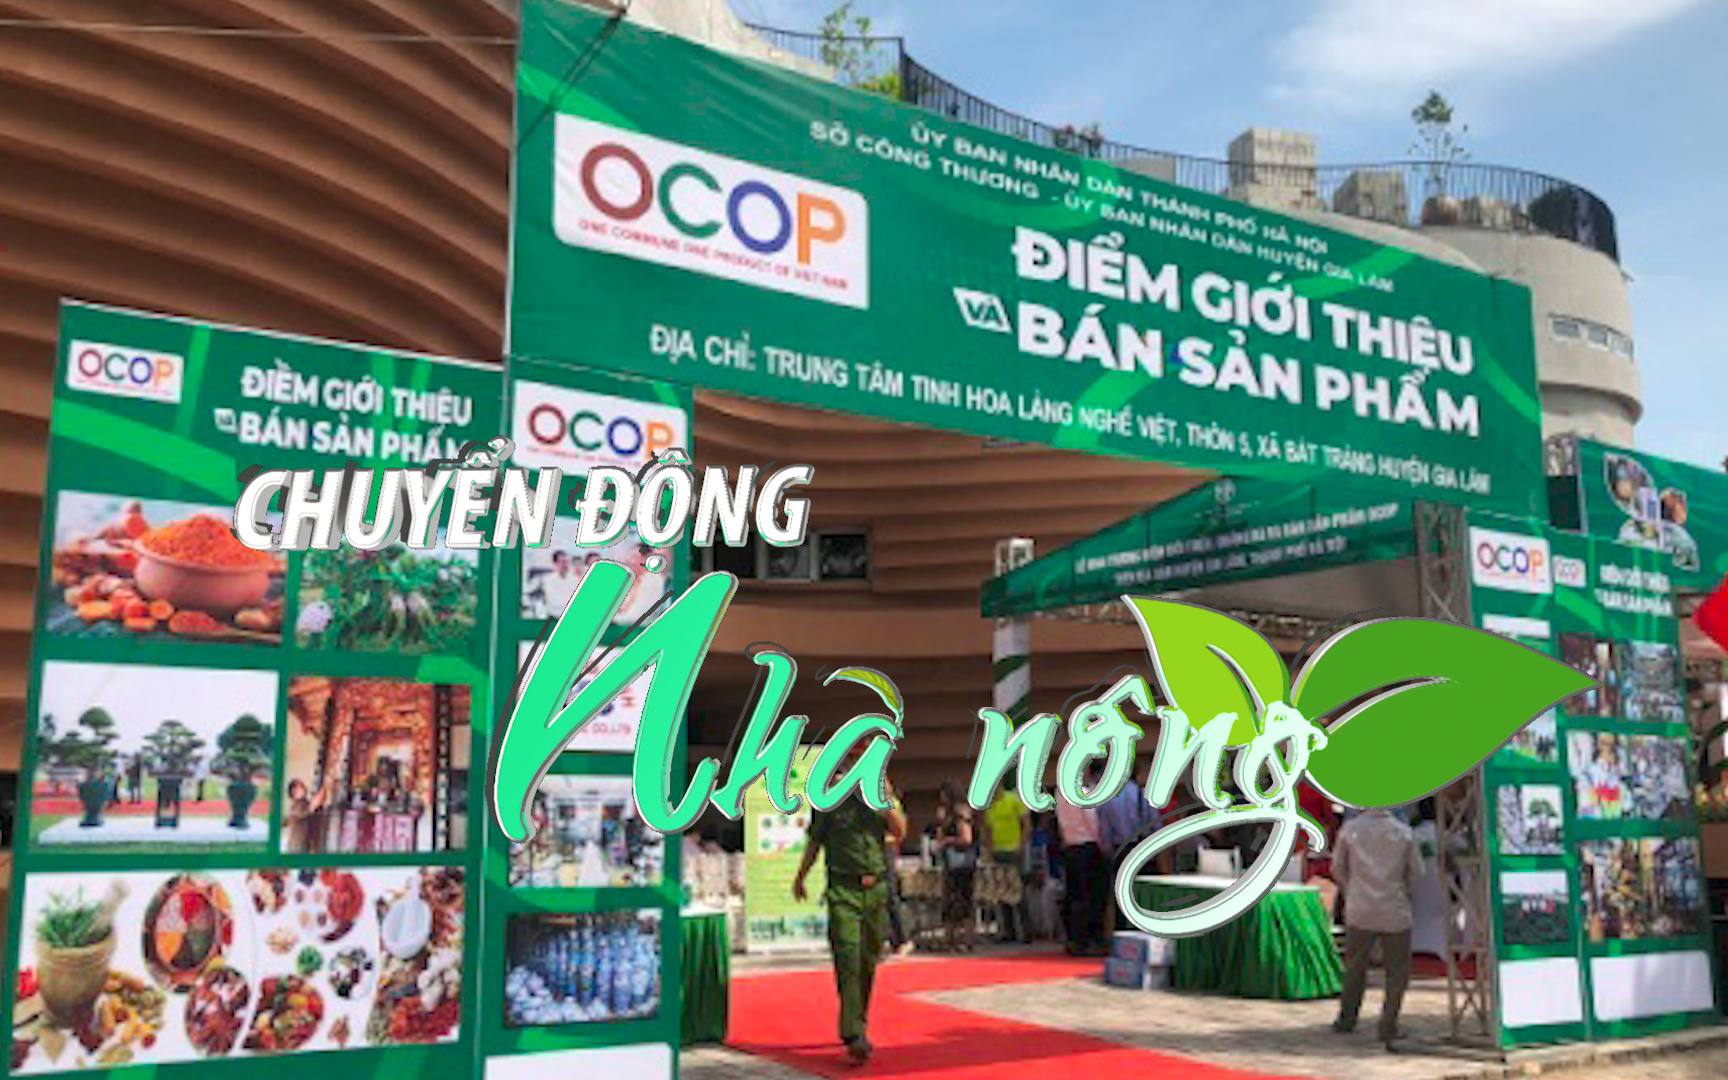 Chuyển động Nhà nông 25/3: Hà Nội sẽ tổ chức 3 - 5 tuần lễ quảng bá sản phẩm OCOP